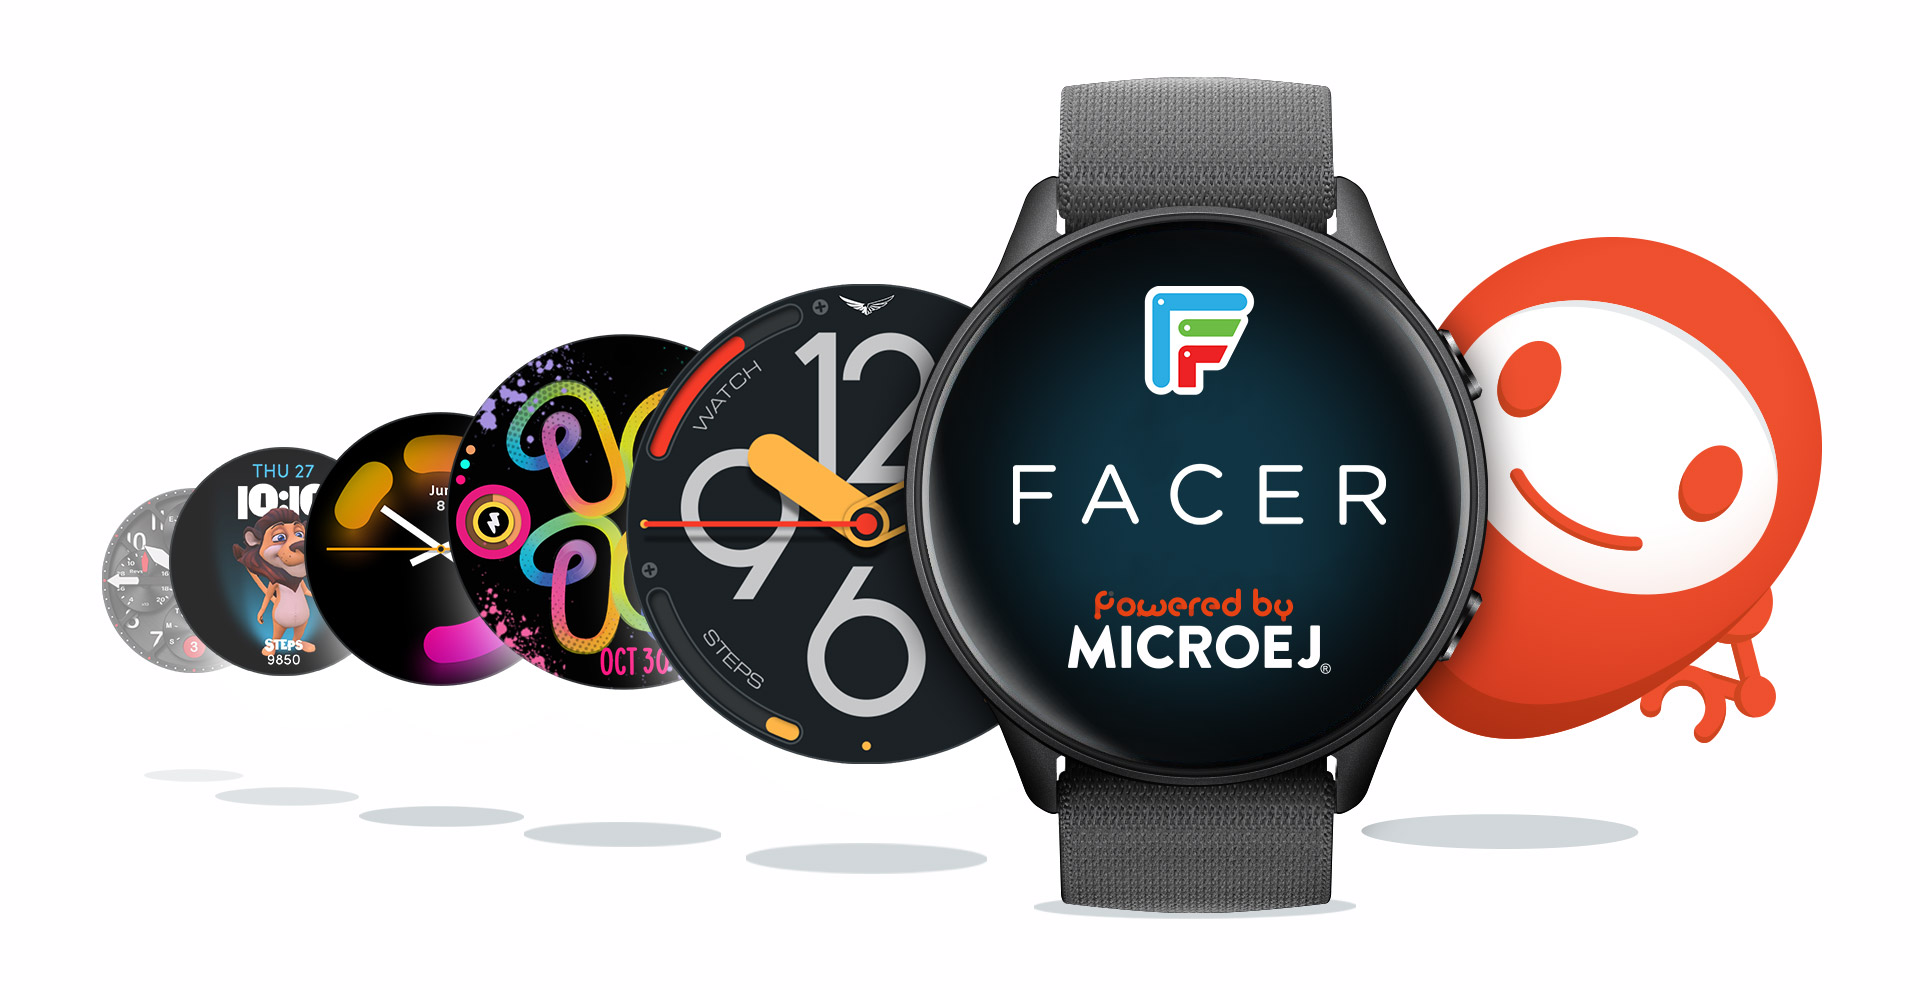 Facer Smartwatch faces RTOS